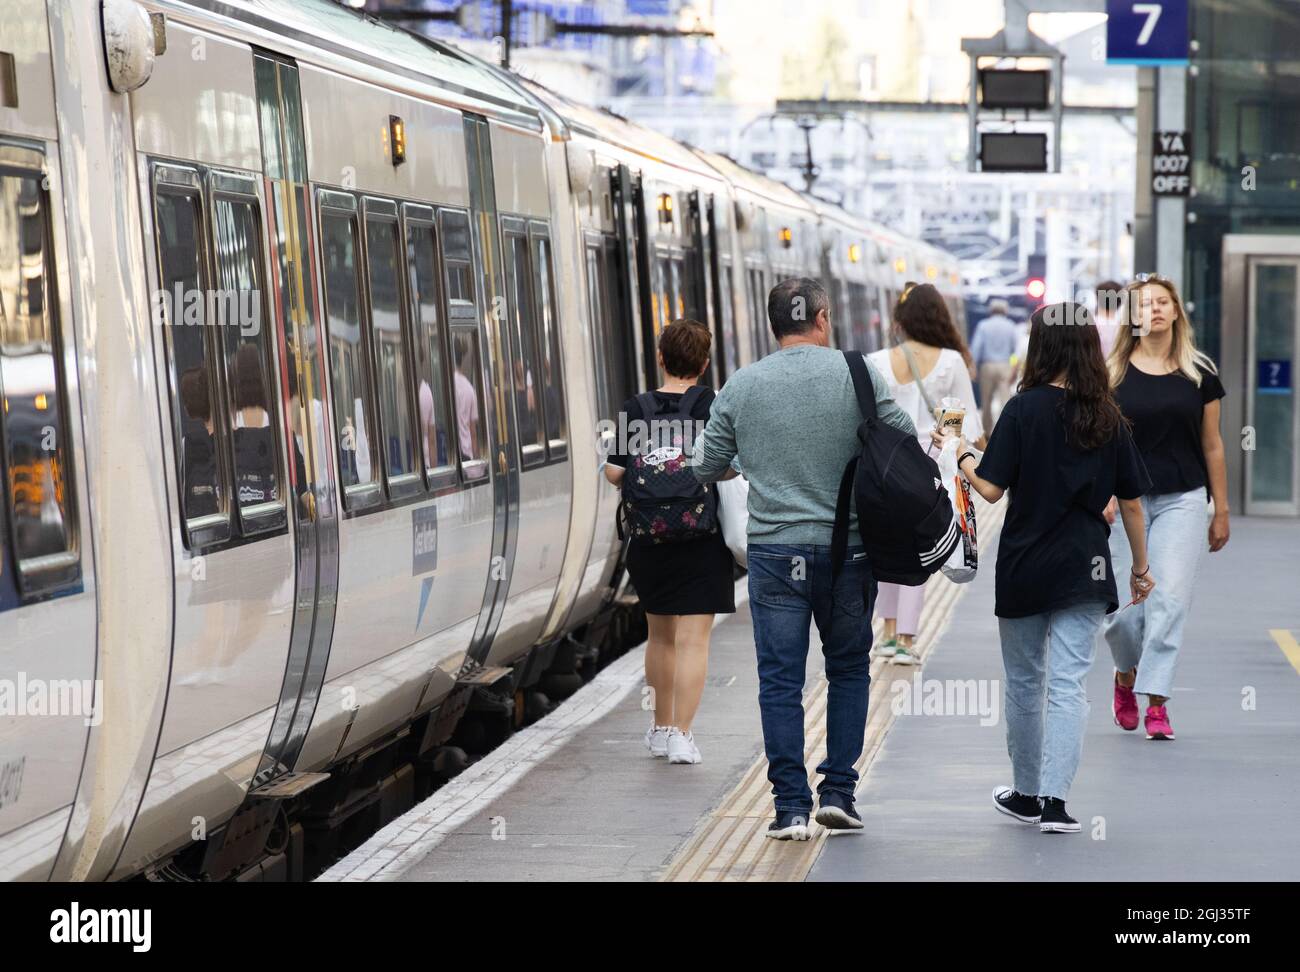 Öffentlicher Nahverkehr Großbritannien - Bahnreisen Großbritannien; Passagiere, die einen Zug auf dem Bahnsteig nehmen, Kings Cross Railway Station, London Großbritannien Stockfoto